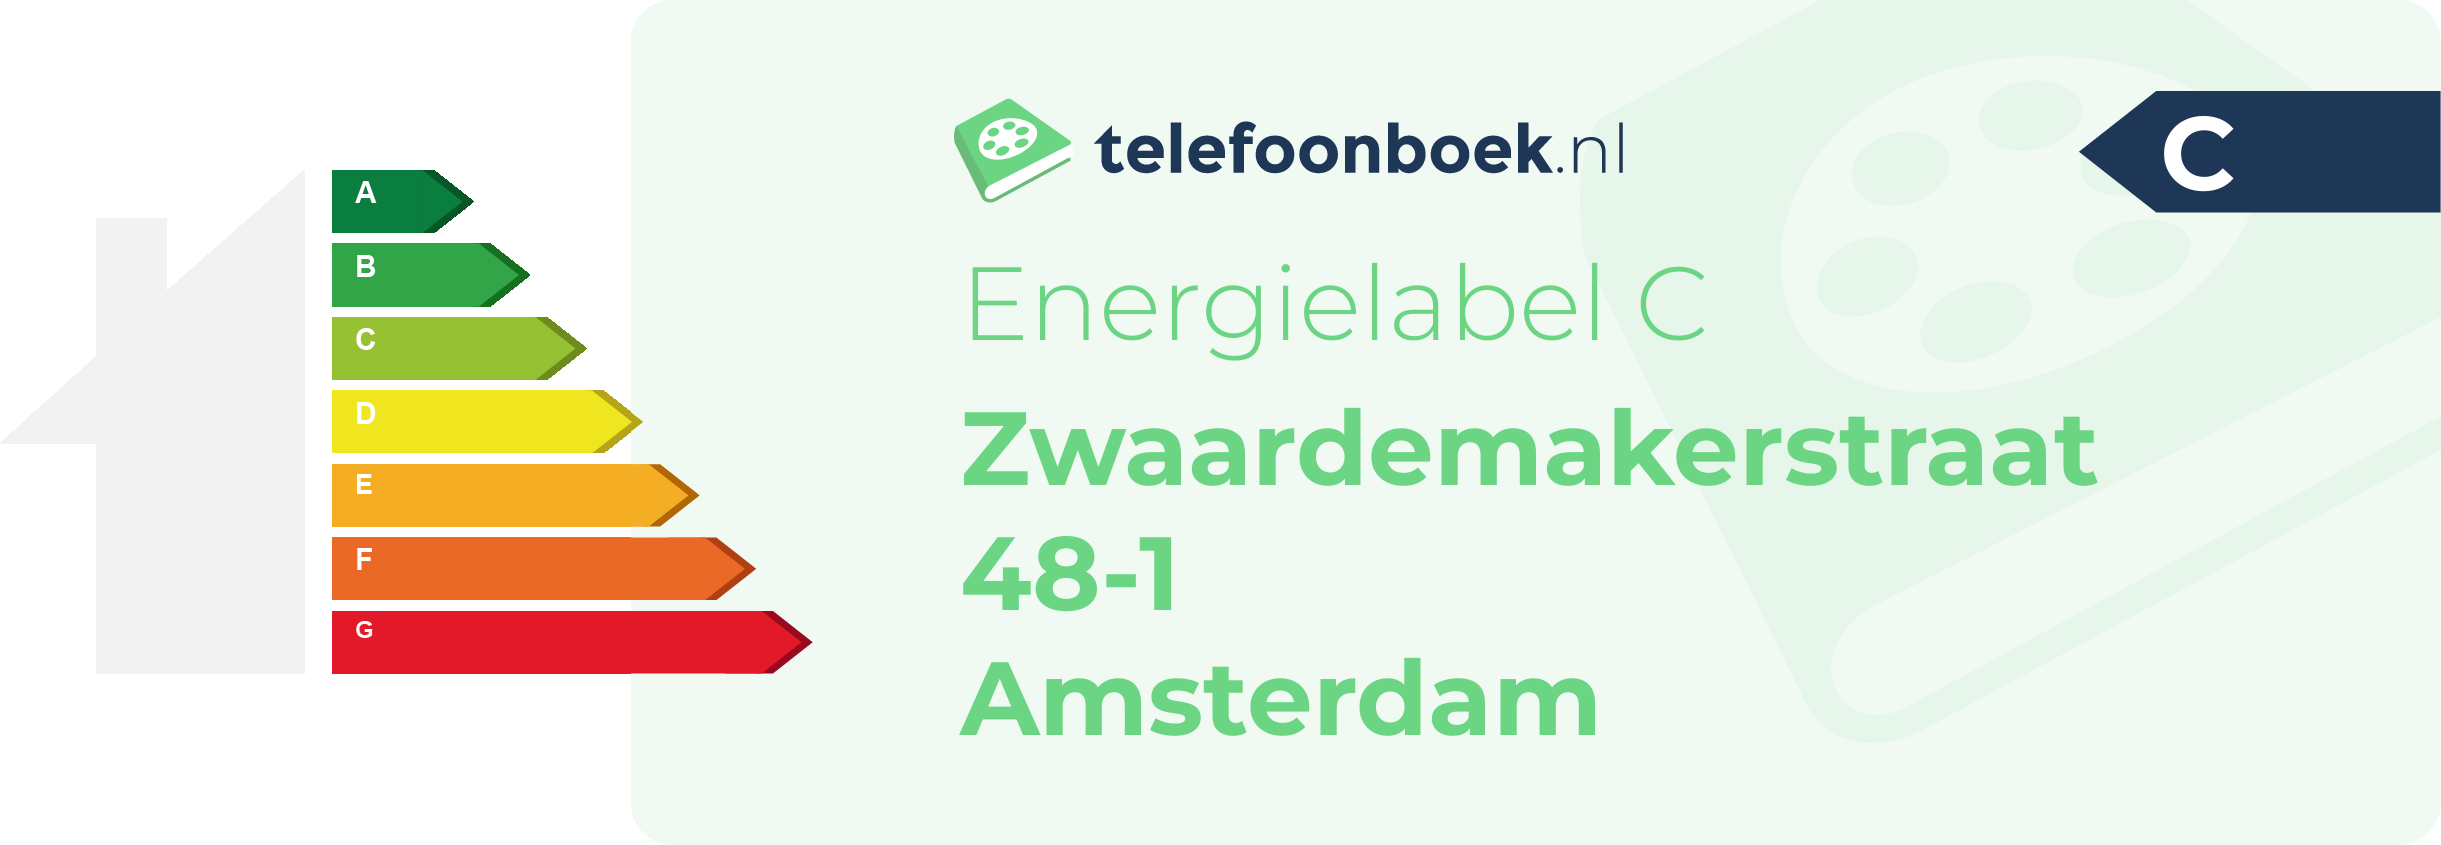 Energielabel Zwaardemakerstraat 48-1 Amsterdam